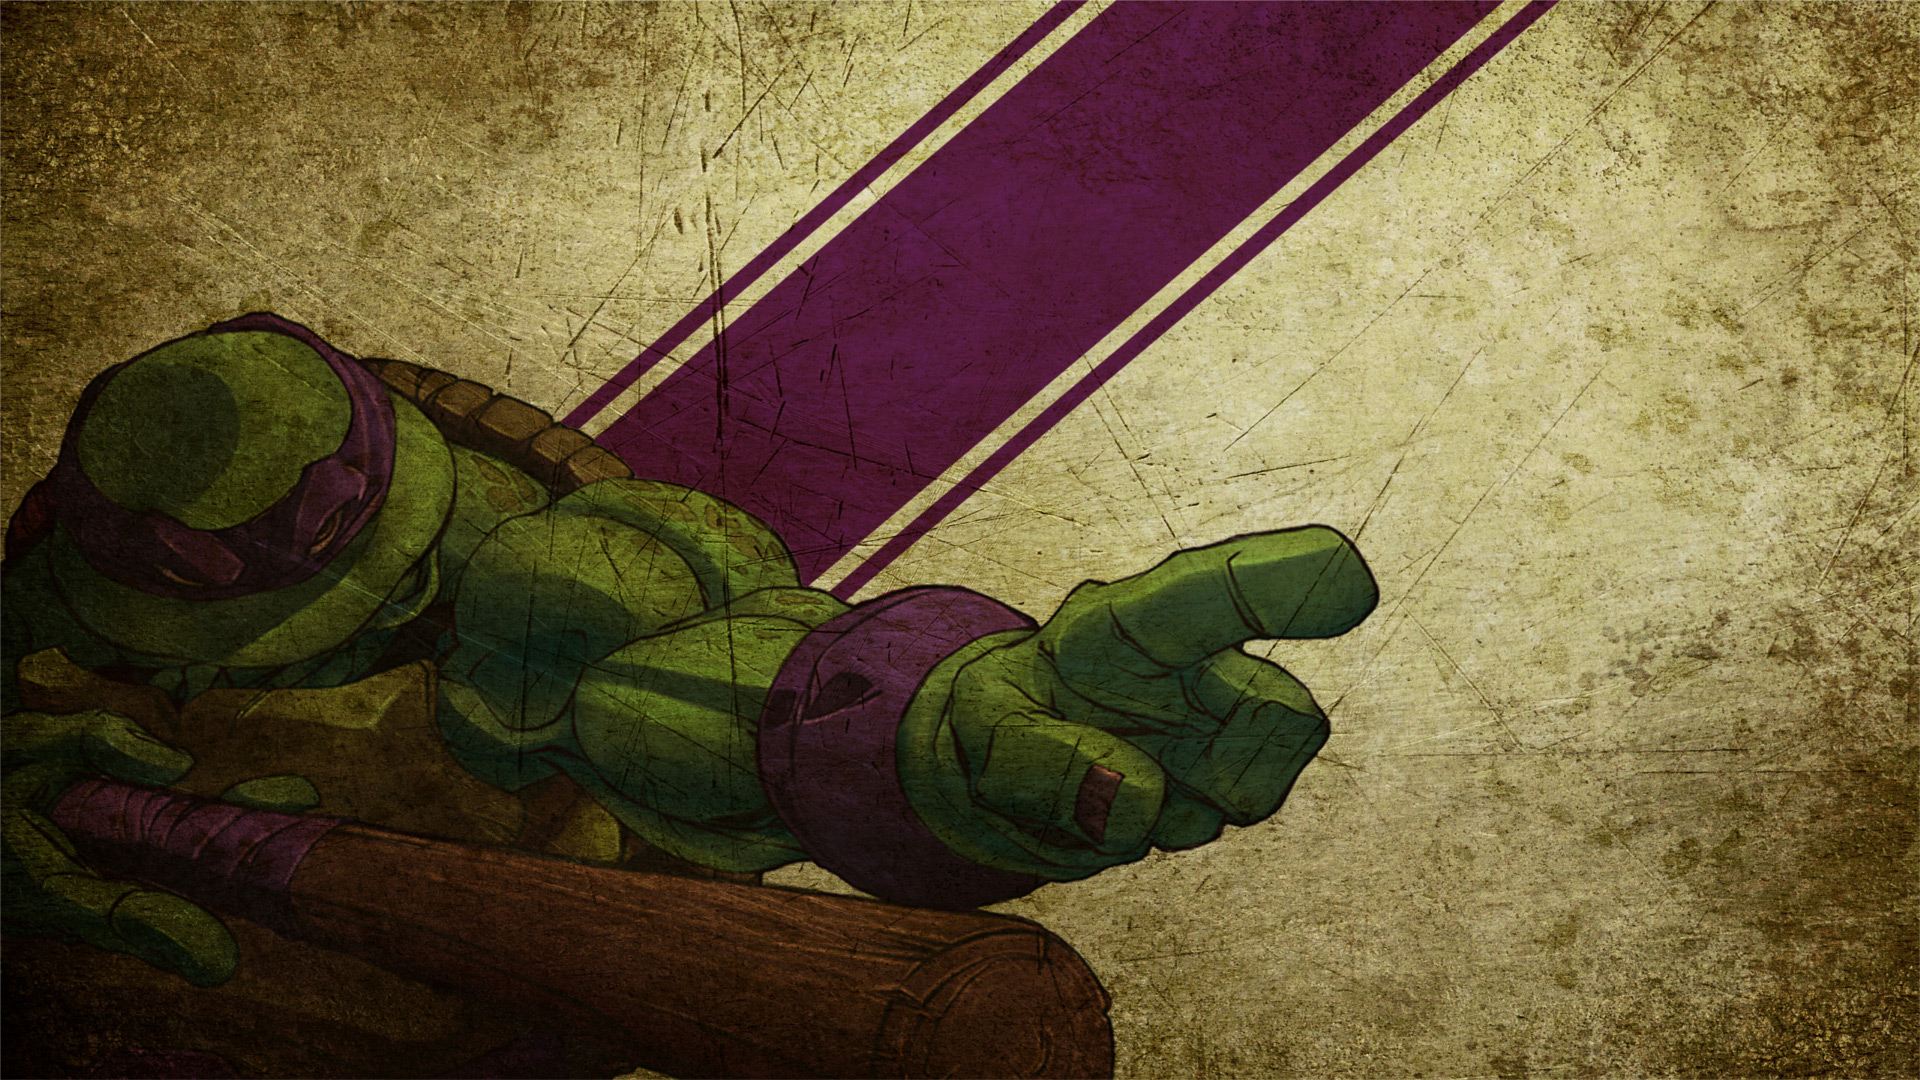 General 1920x1080 Teenage Mutant Ninja Turtles Donatello (TMNT) cartoon grunge purple digital art